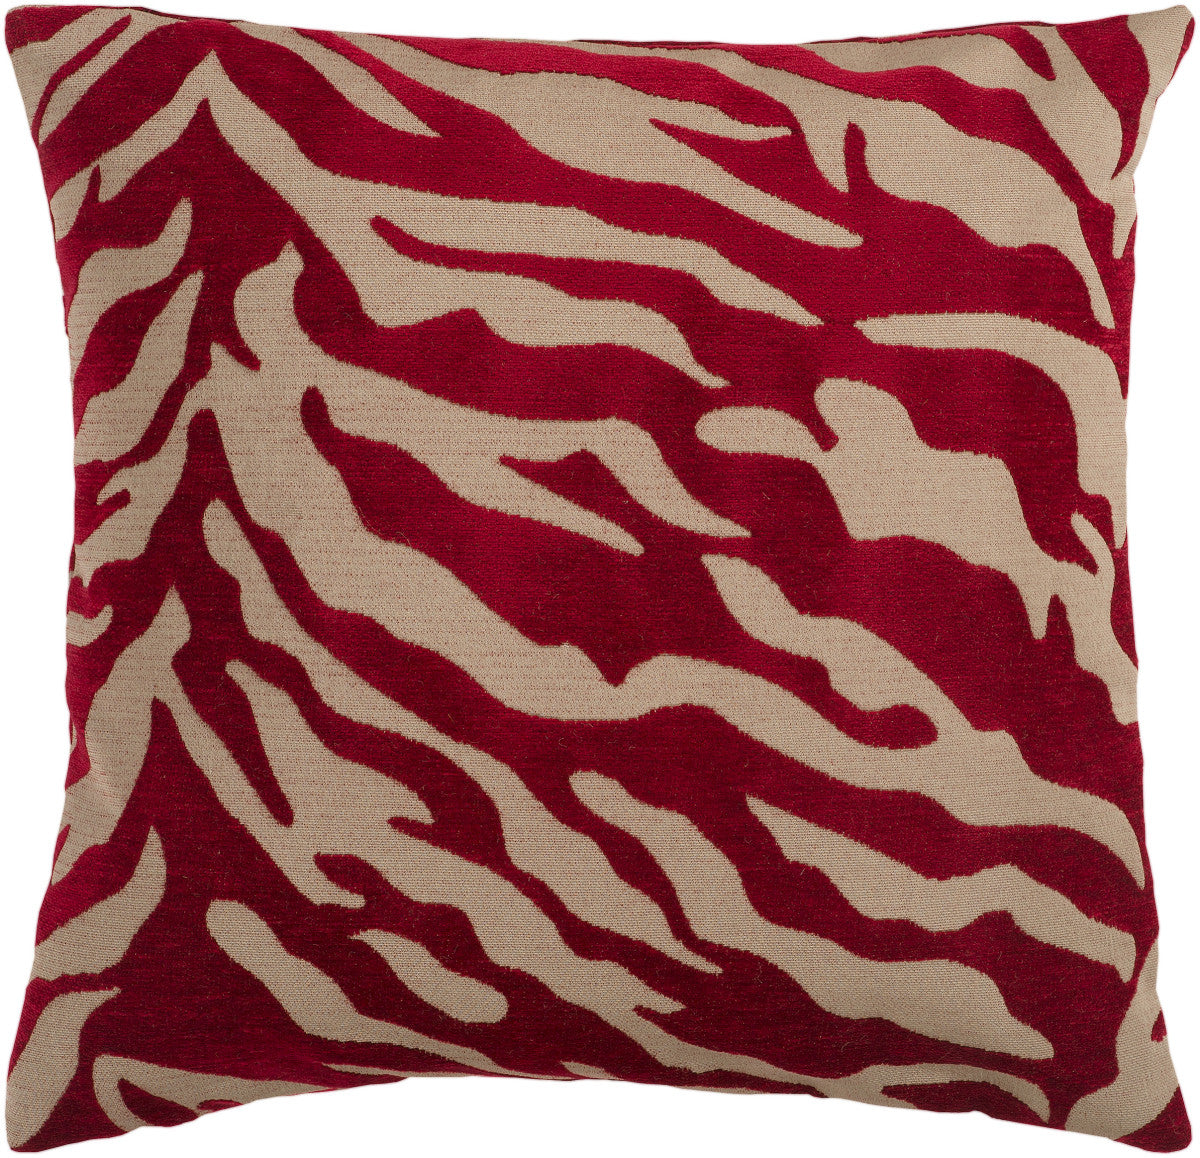 Surya Velvet Zebra Eye-catching Patterned JS-026 Pillow